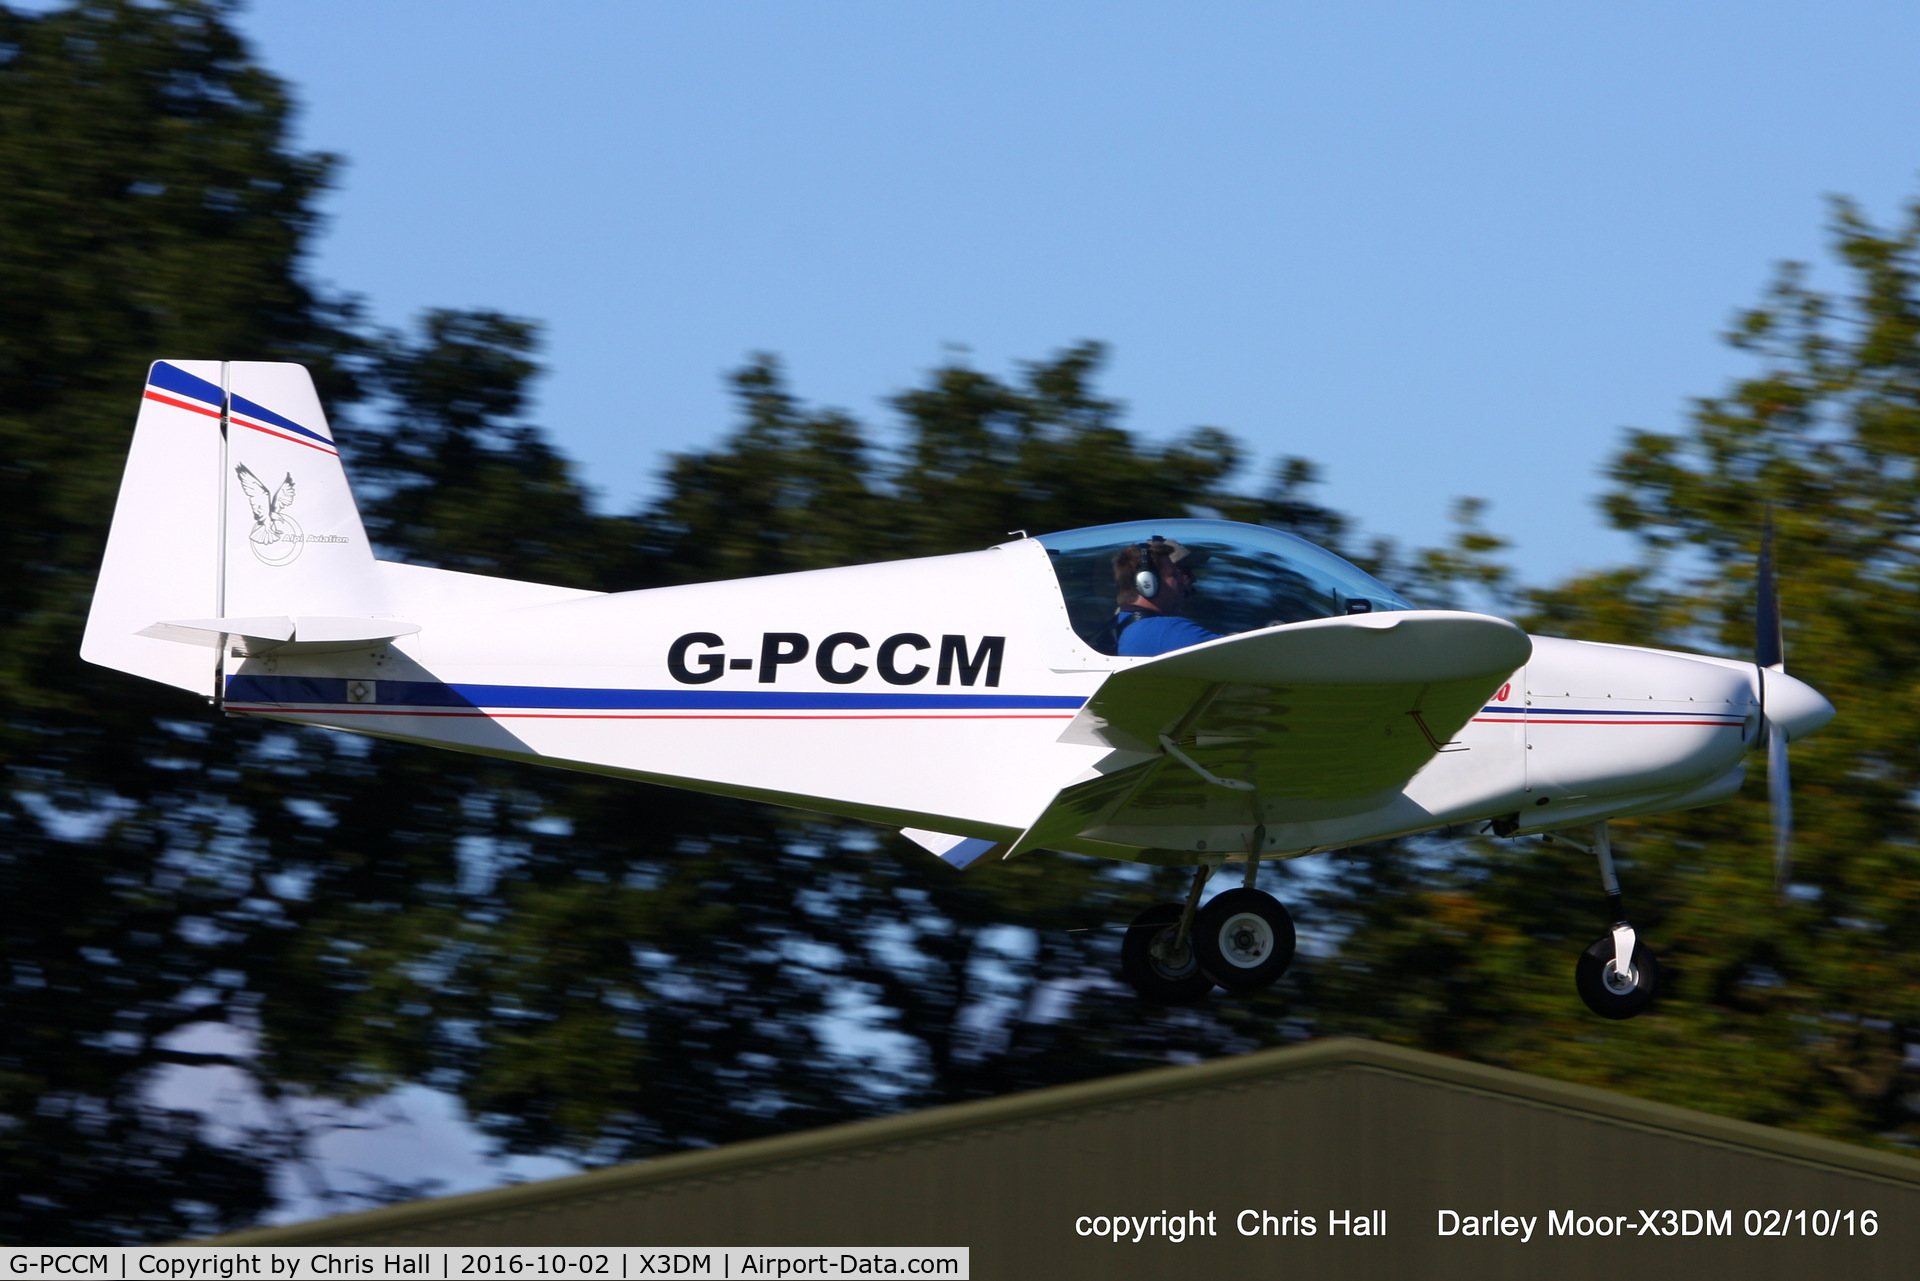 G-PCCM, 2014 Alpi Aviation Pioneer 200-M C/N LAA 334-15250, at Darley Moor Airfield